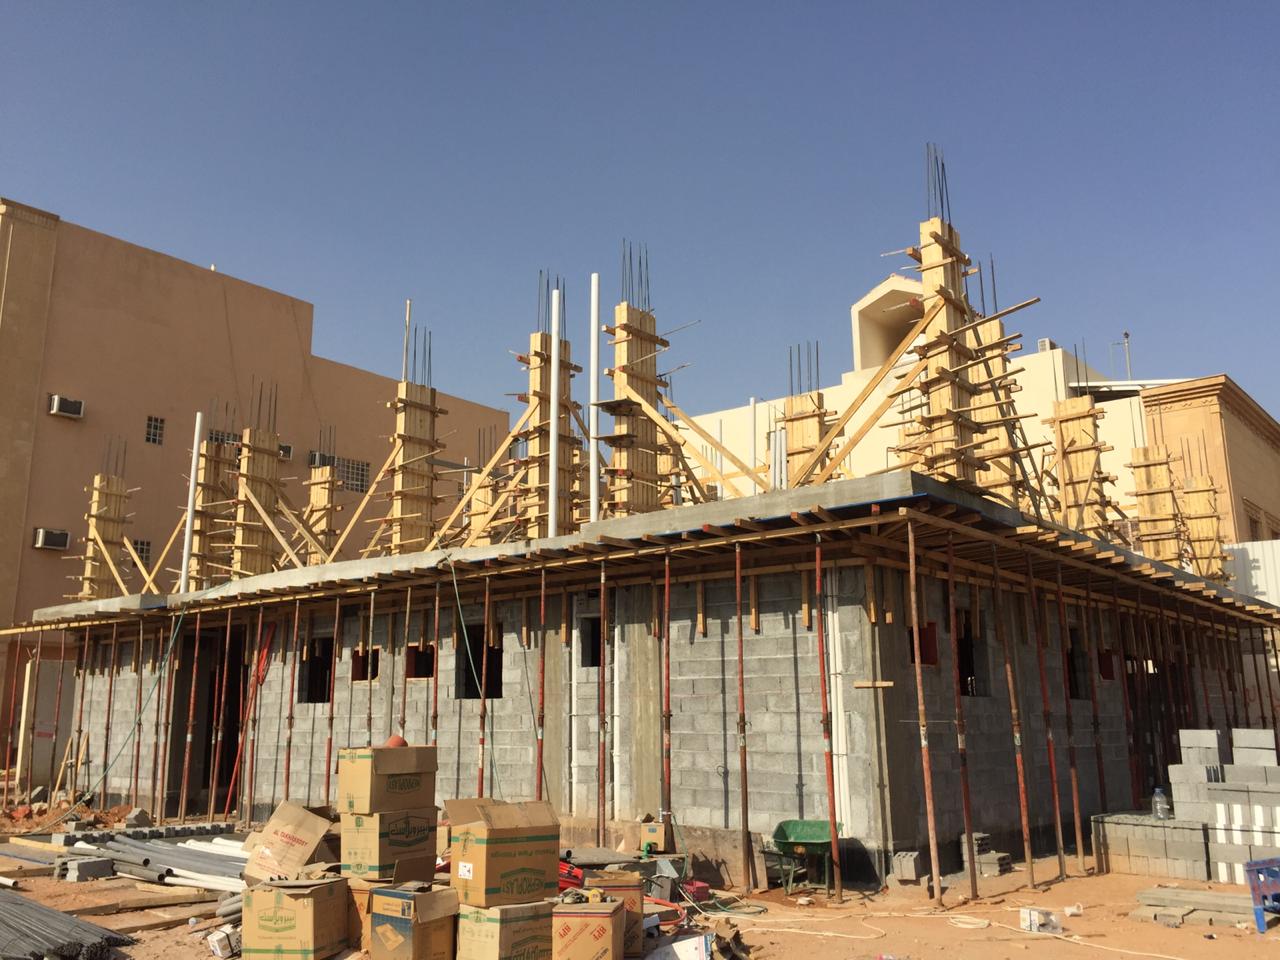 مقاول عظم في الرياض 0533266762 مقاول  بناء ملاحق بالرياض وبسعر مناسب  P_1695kcjkn2